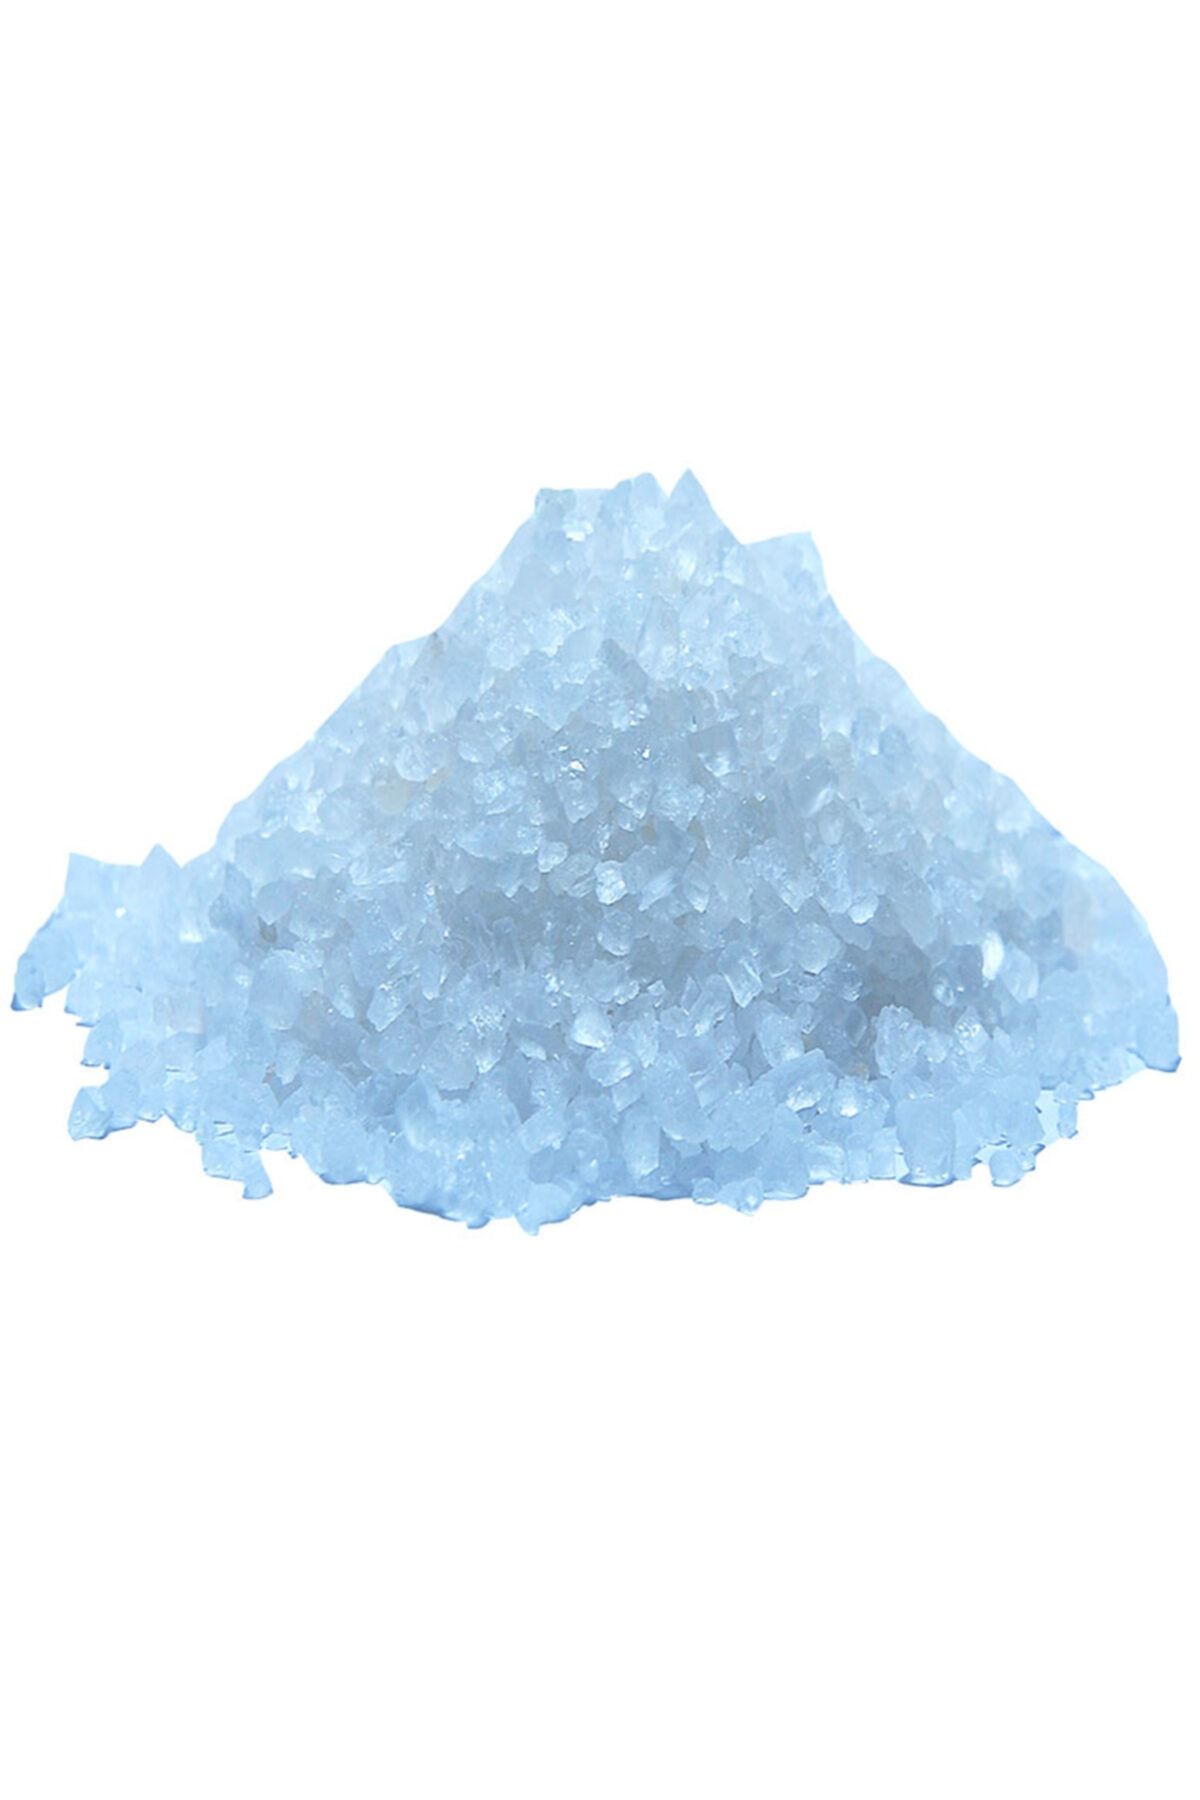 LokmanAVM Yemeklik Himalaya Kristal Kaya Tuzu Çakıl Beyaz 500 Gr